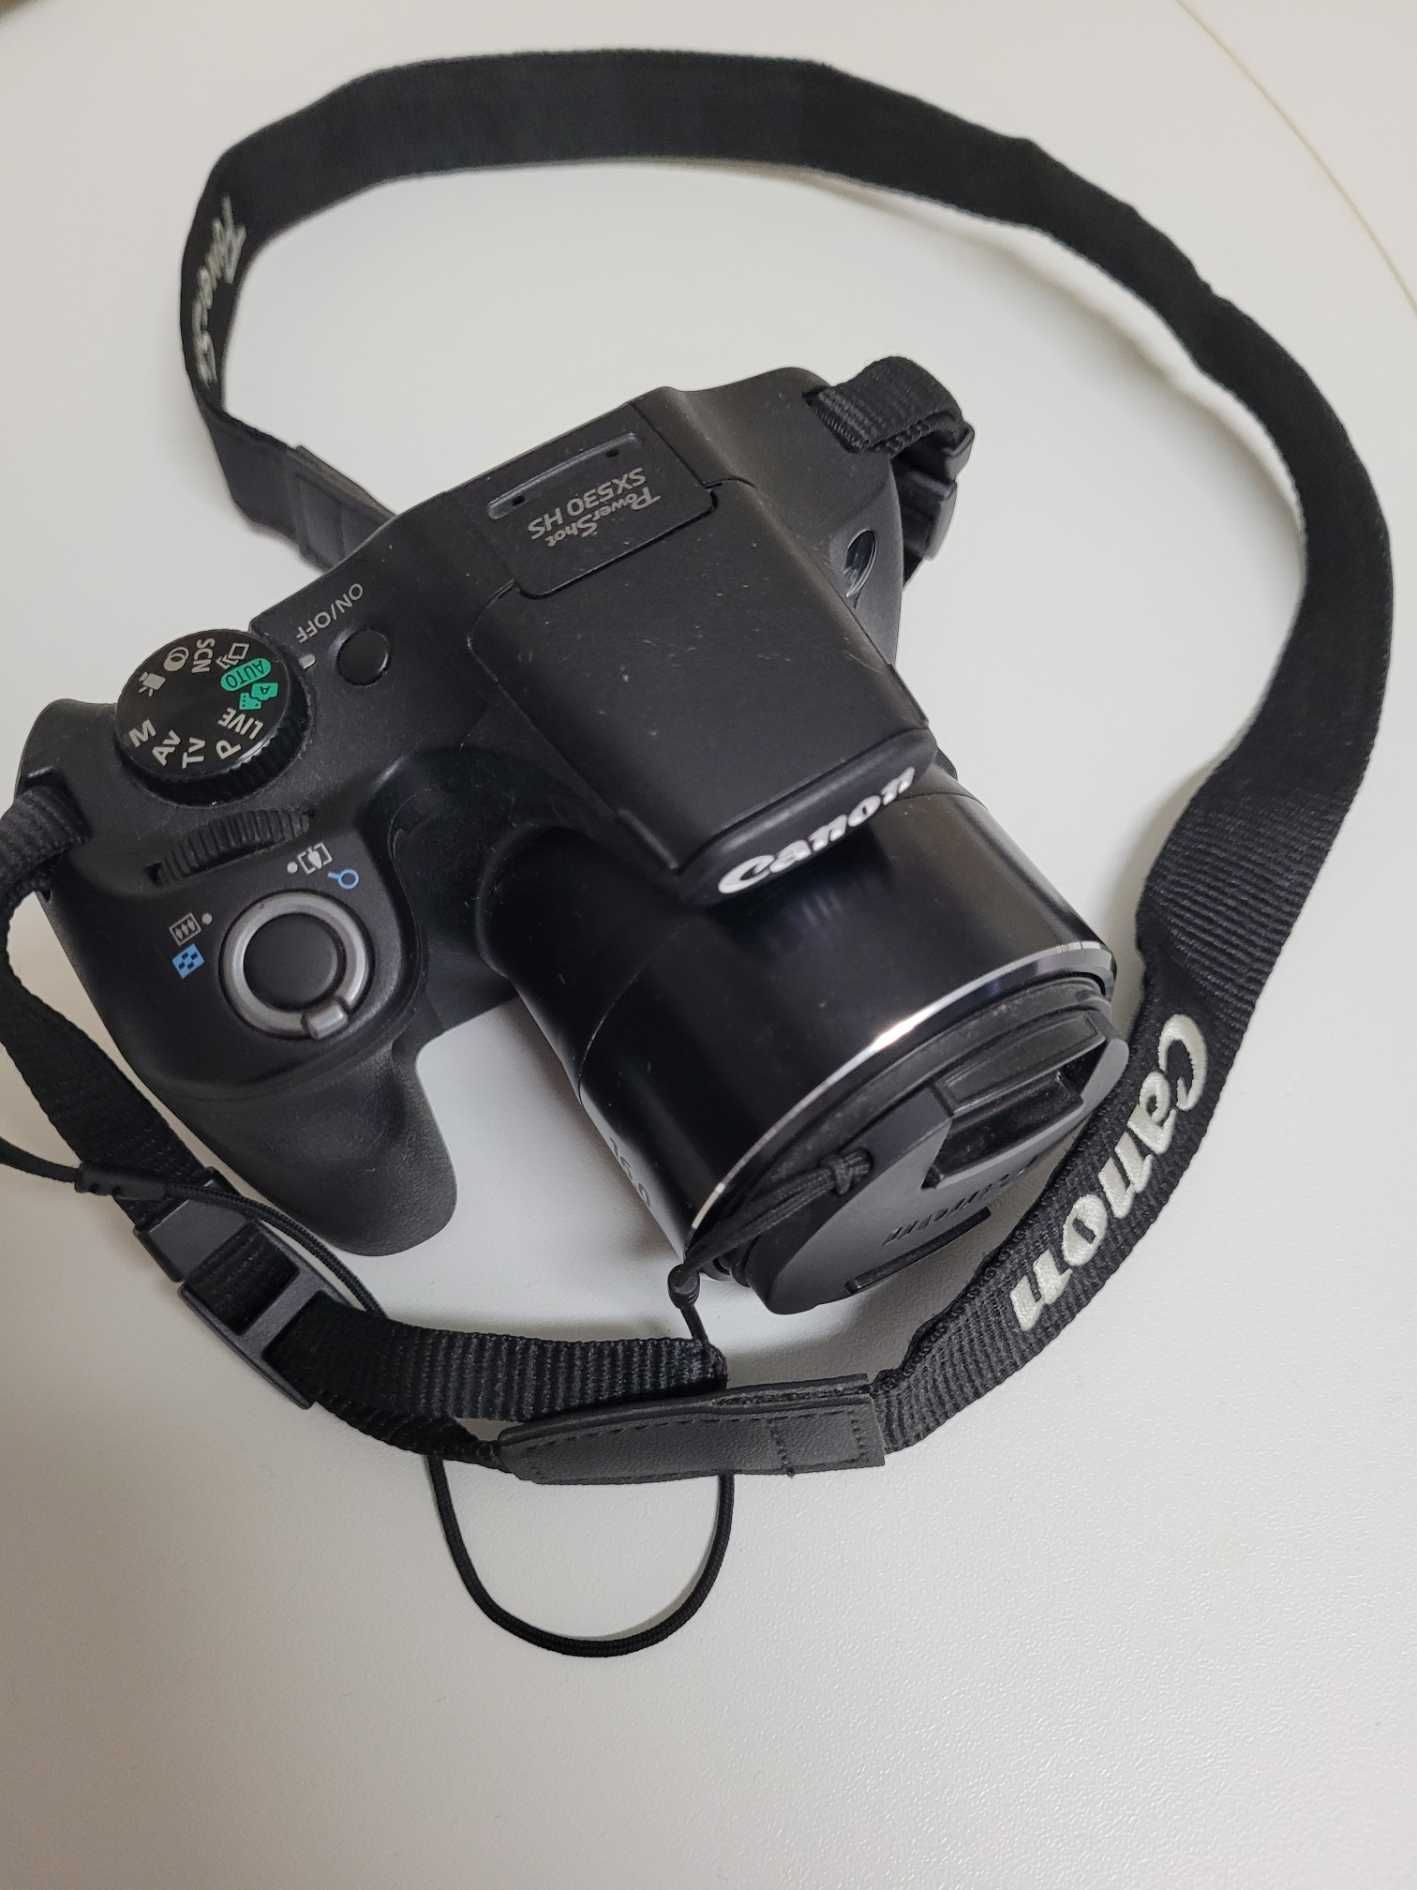 Máquina fotográfica Canon SX530HS com o respectivo carregador e caixa